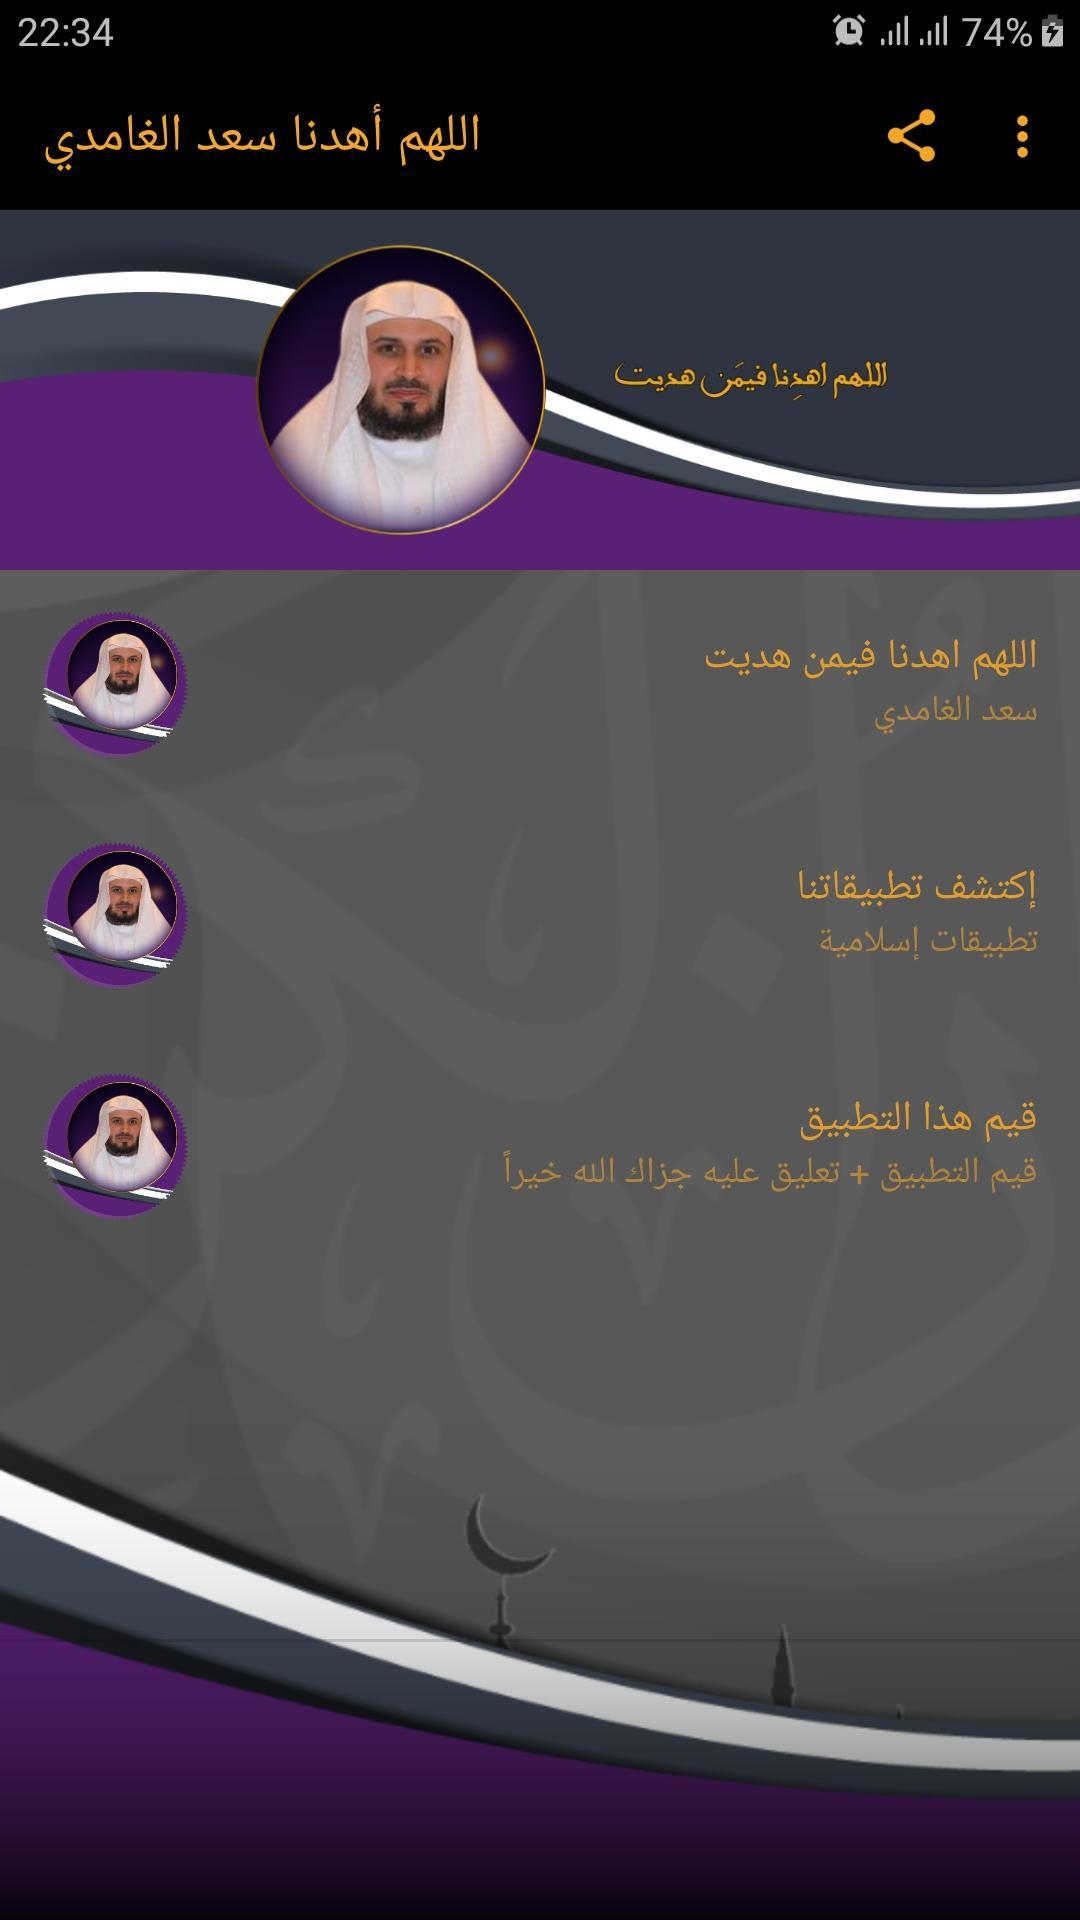 اللهم اهدنا فيمن هديت سعد الغامدي for Android - APK Download